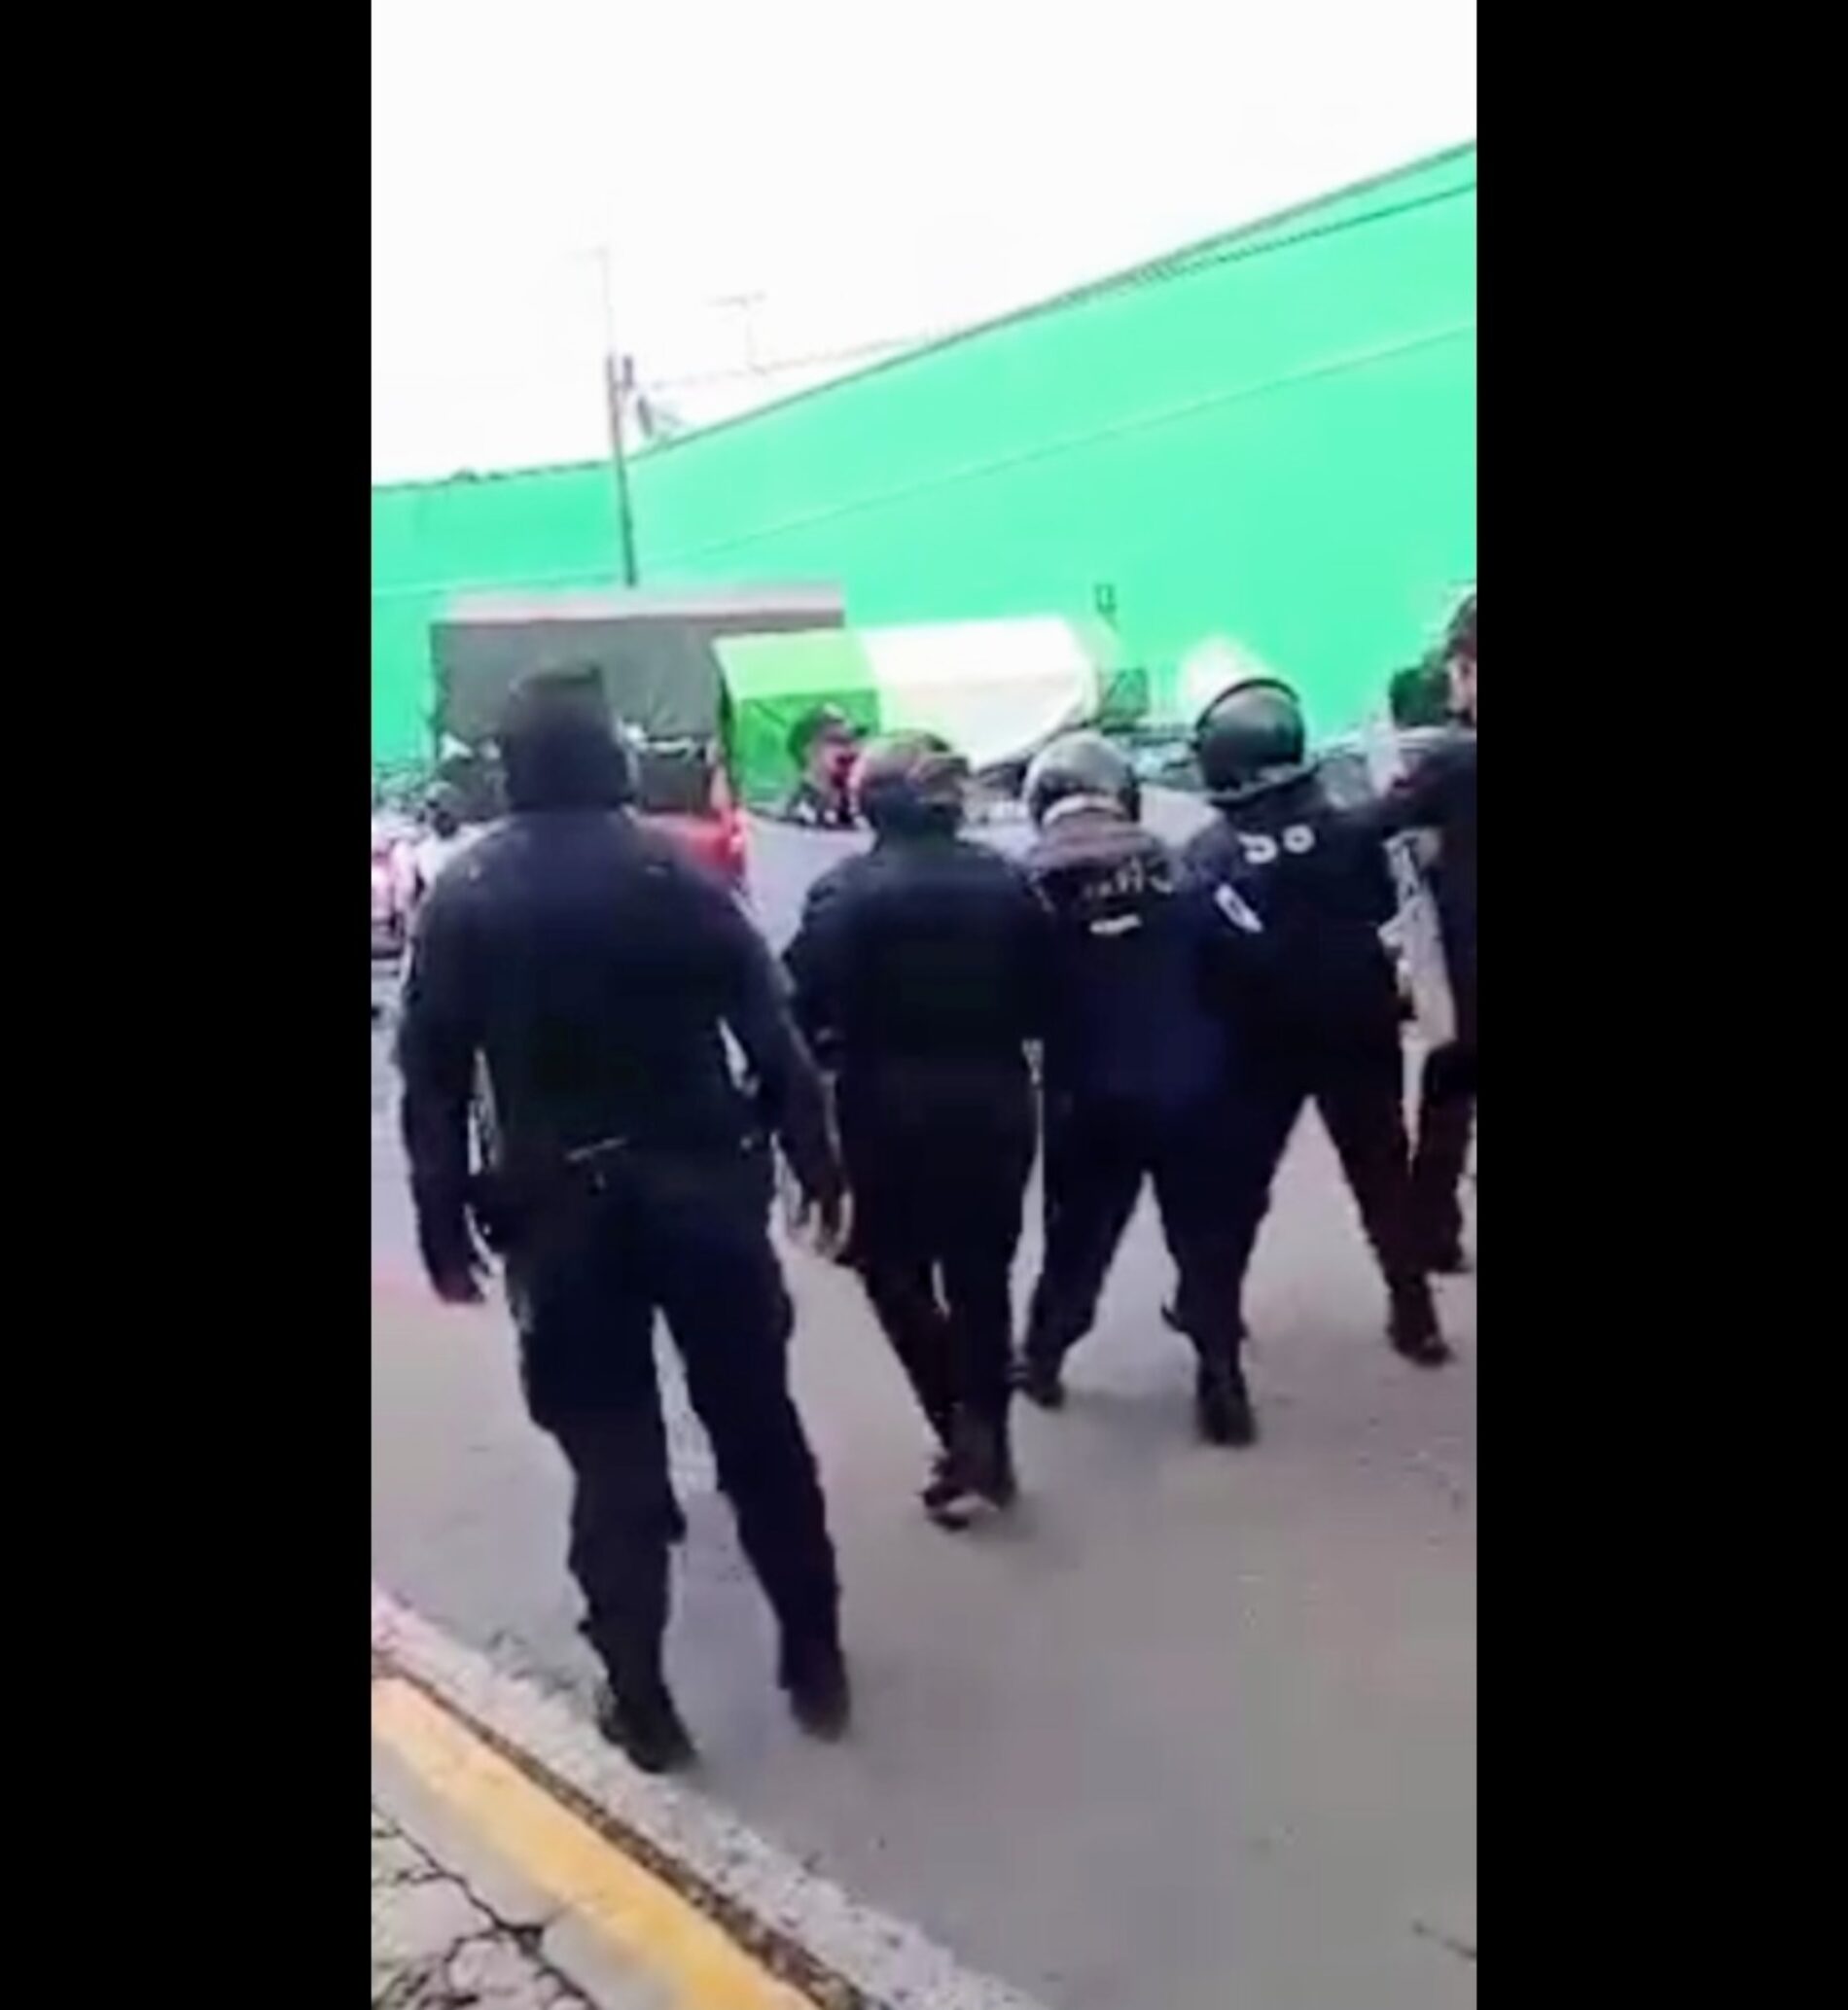 CHOCAN POLICIAS Y COMERCIANTES DEL MERCADO EN CHOLULA